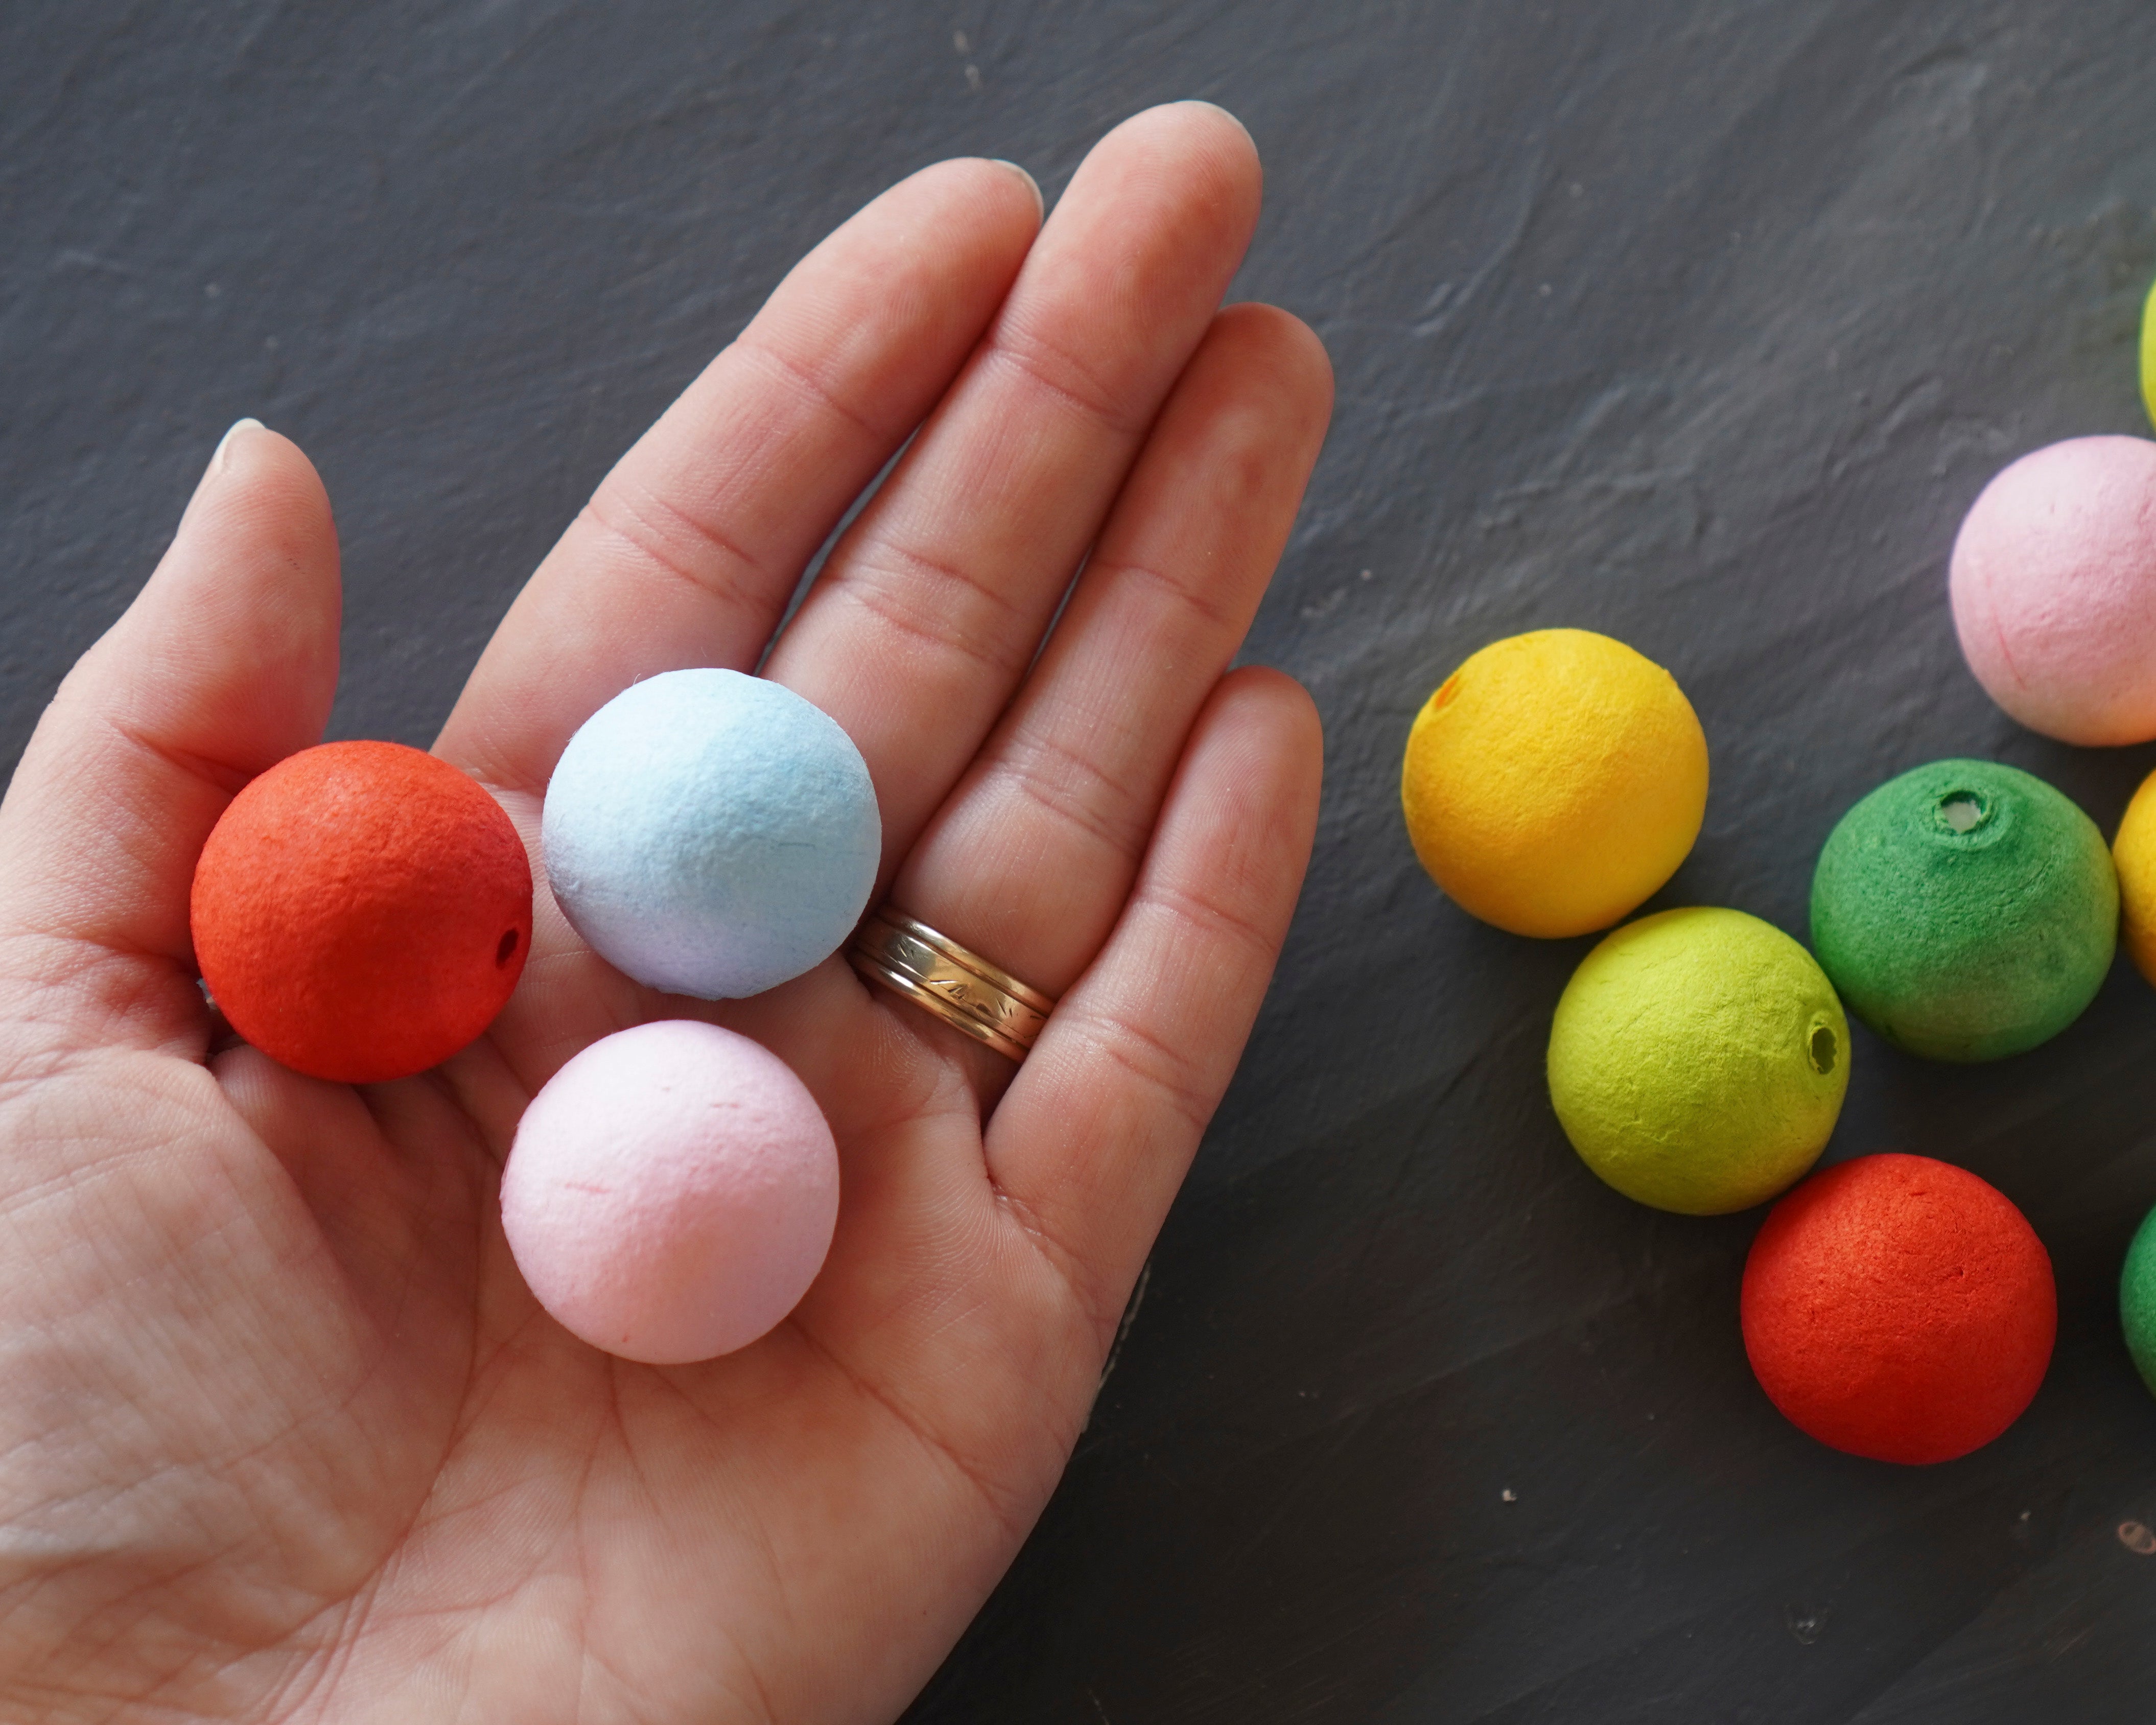  Colored Cotton Balls